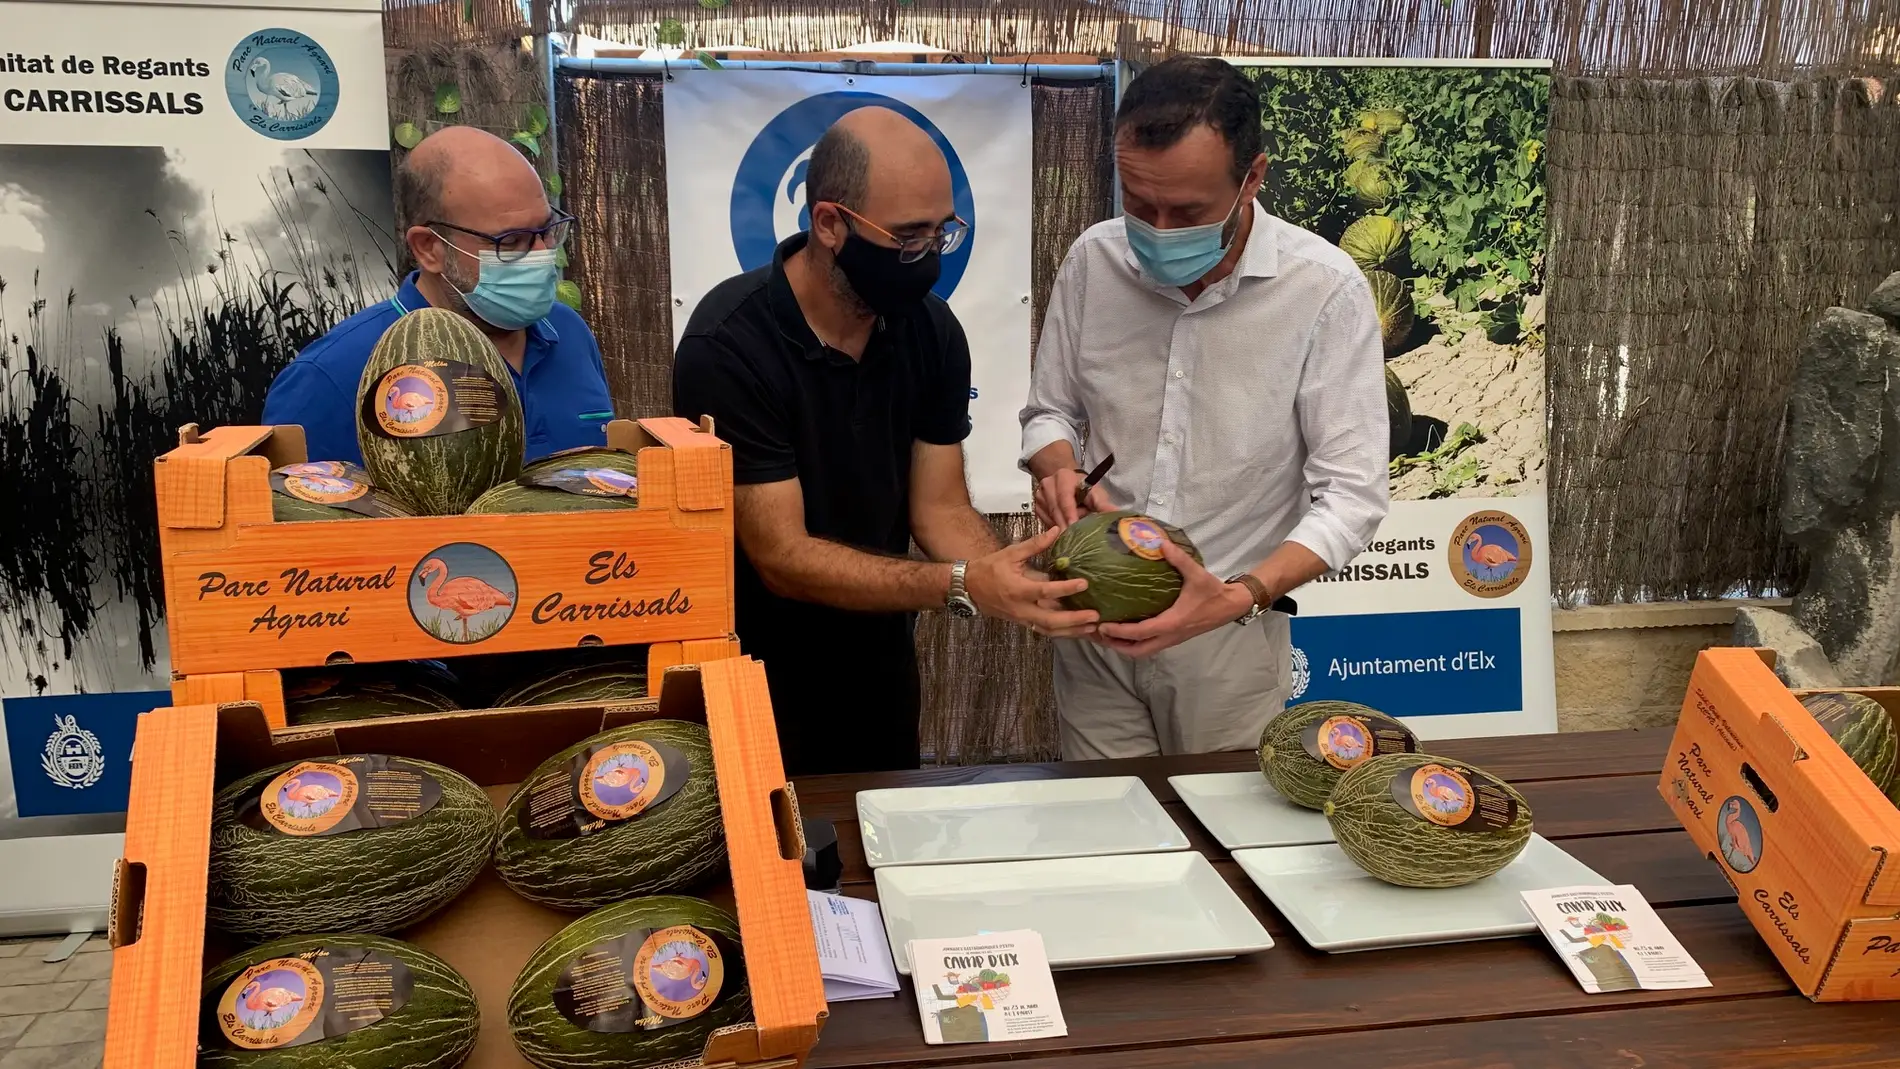  La Comunidad de Regantes de Carrizales espera obtener este año 350.000 kilos de melones frente a los 600.000 del año pasado